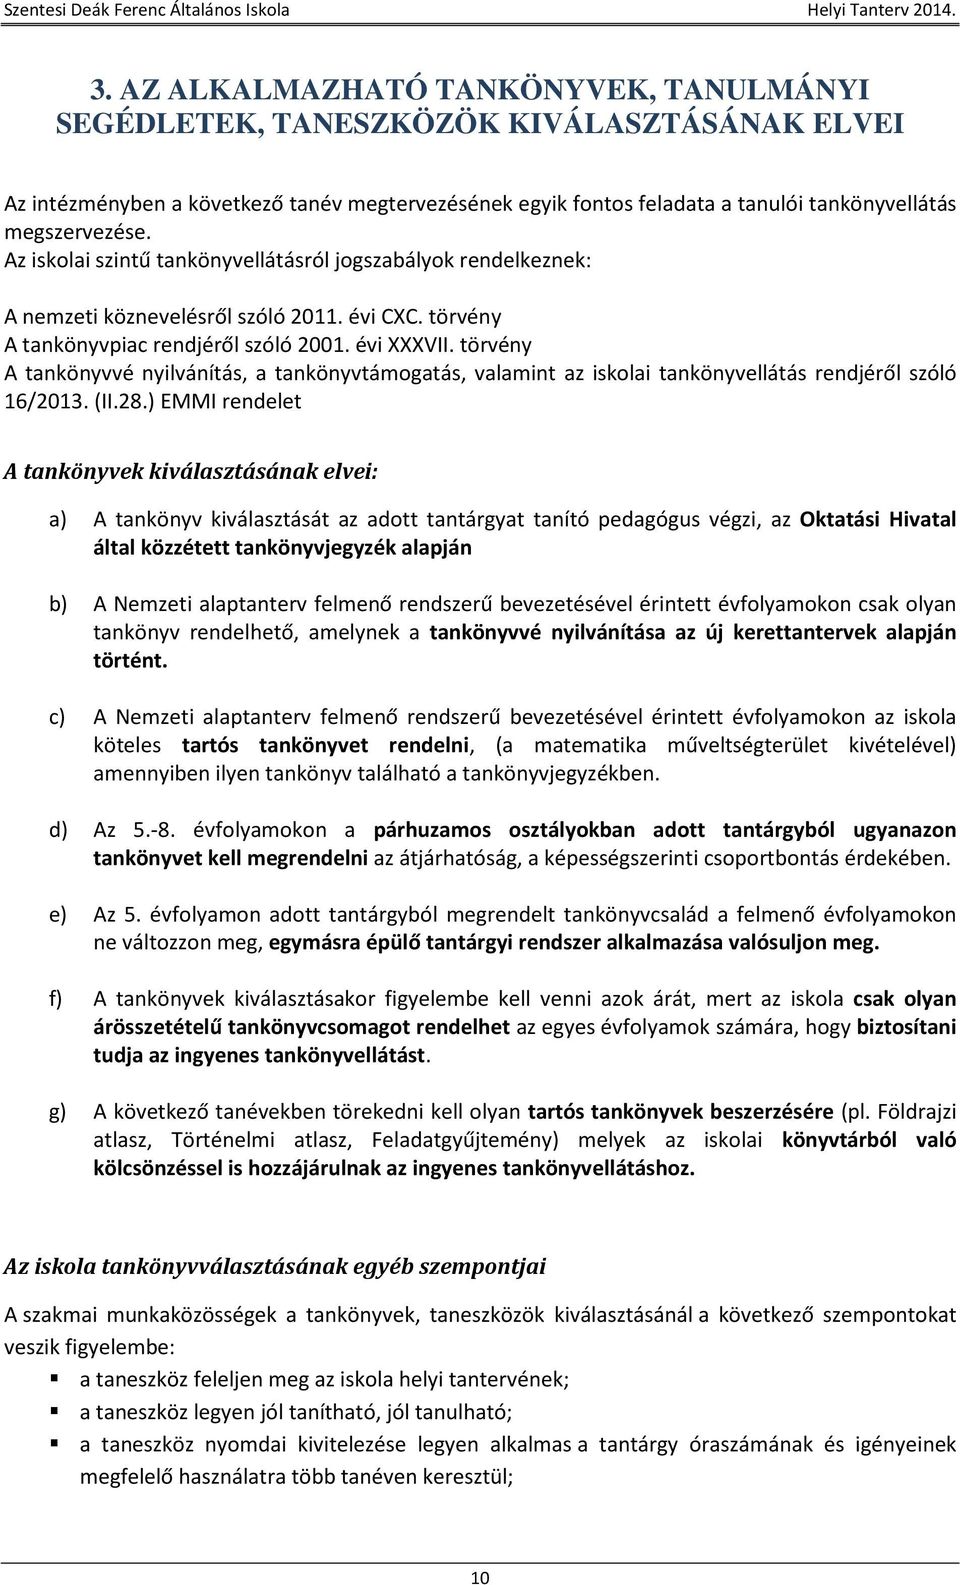 törvény A tankönyvvé nyilvánítás, a tankönyvtámogatás, valamint az iskolai tankönyvellátás rendjéről szóló 16/2013. (II.28.